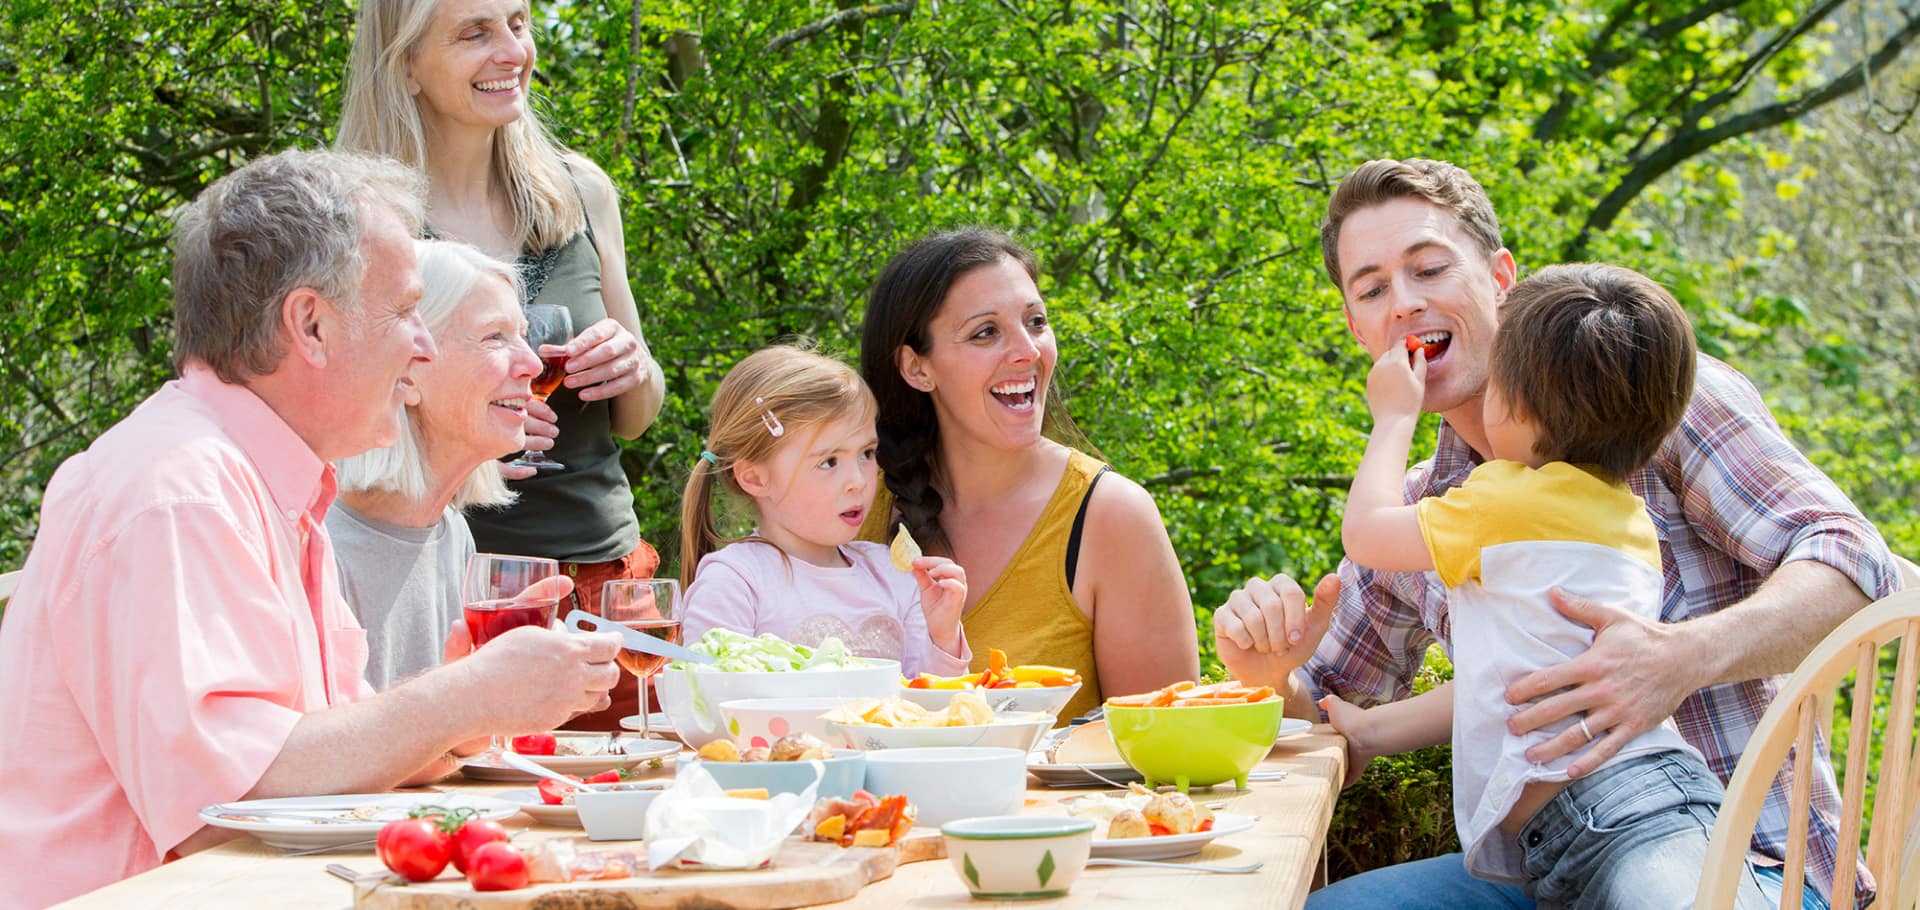 Family enjoying a garden picnic at a table